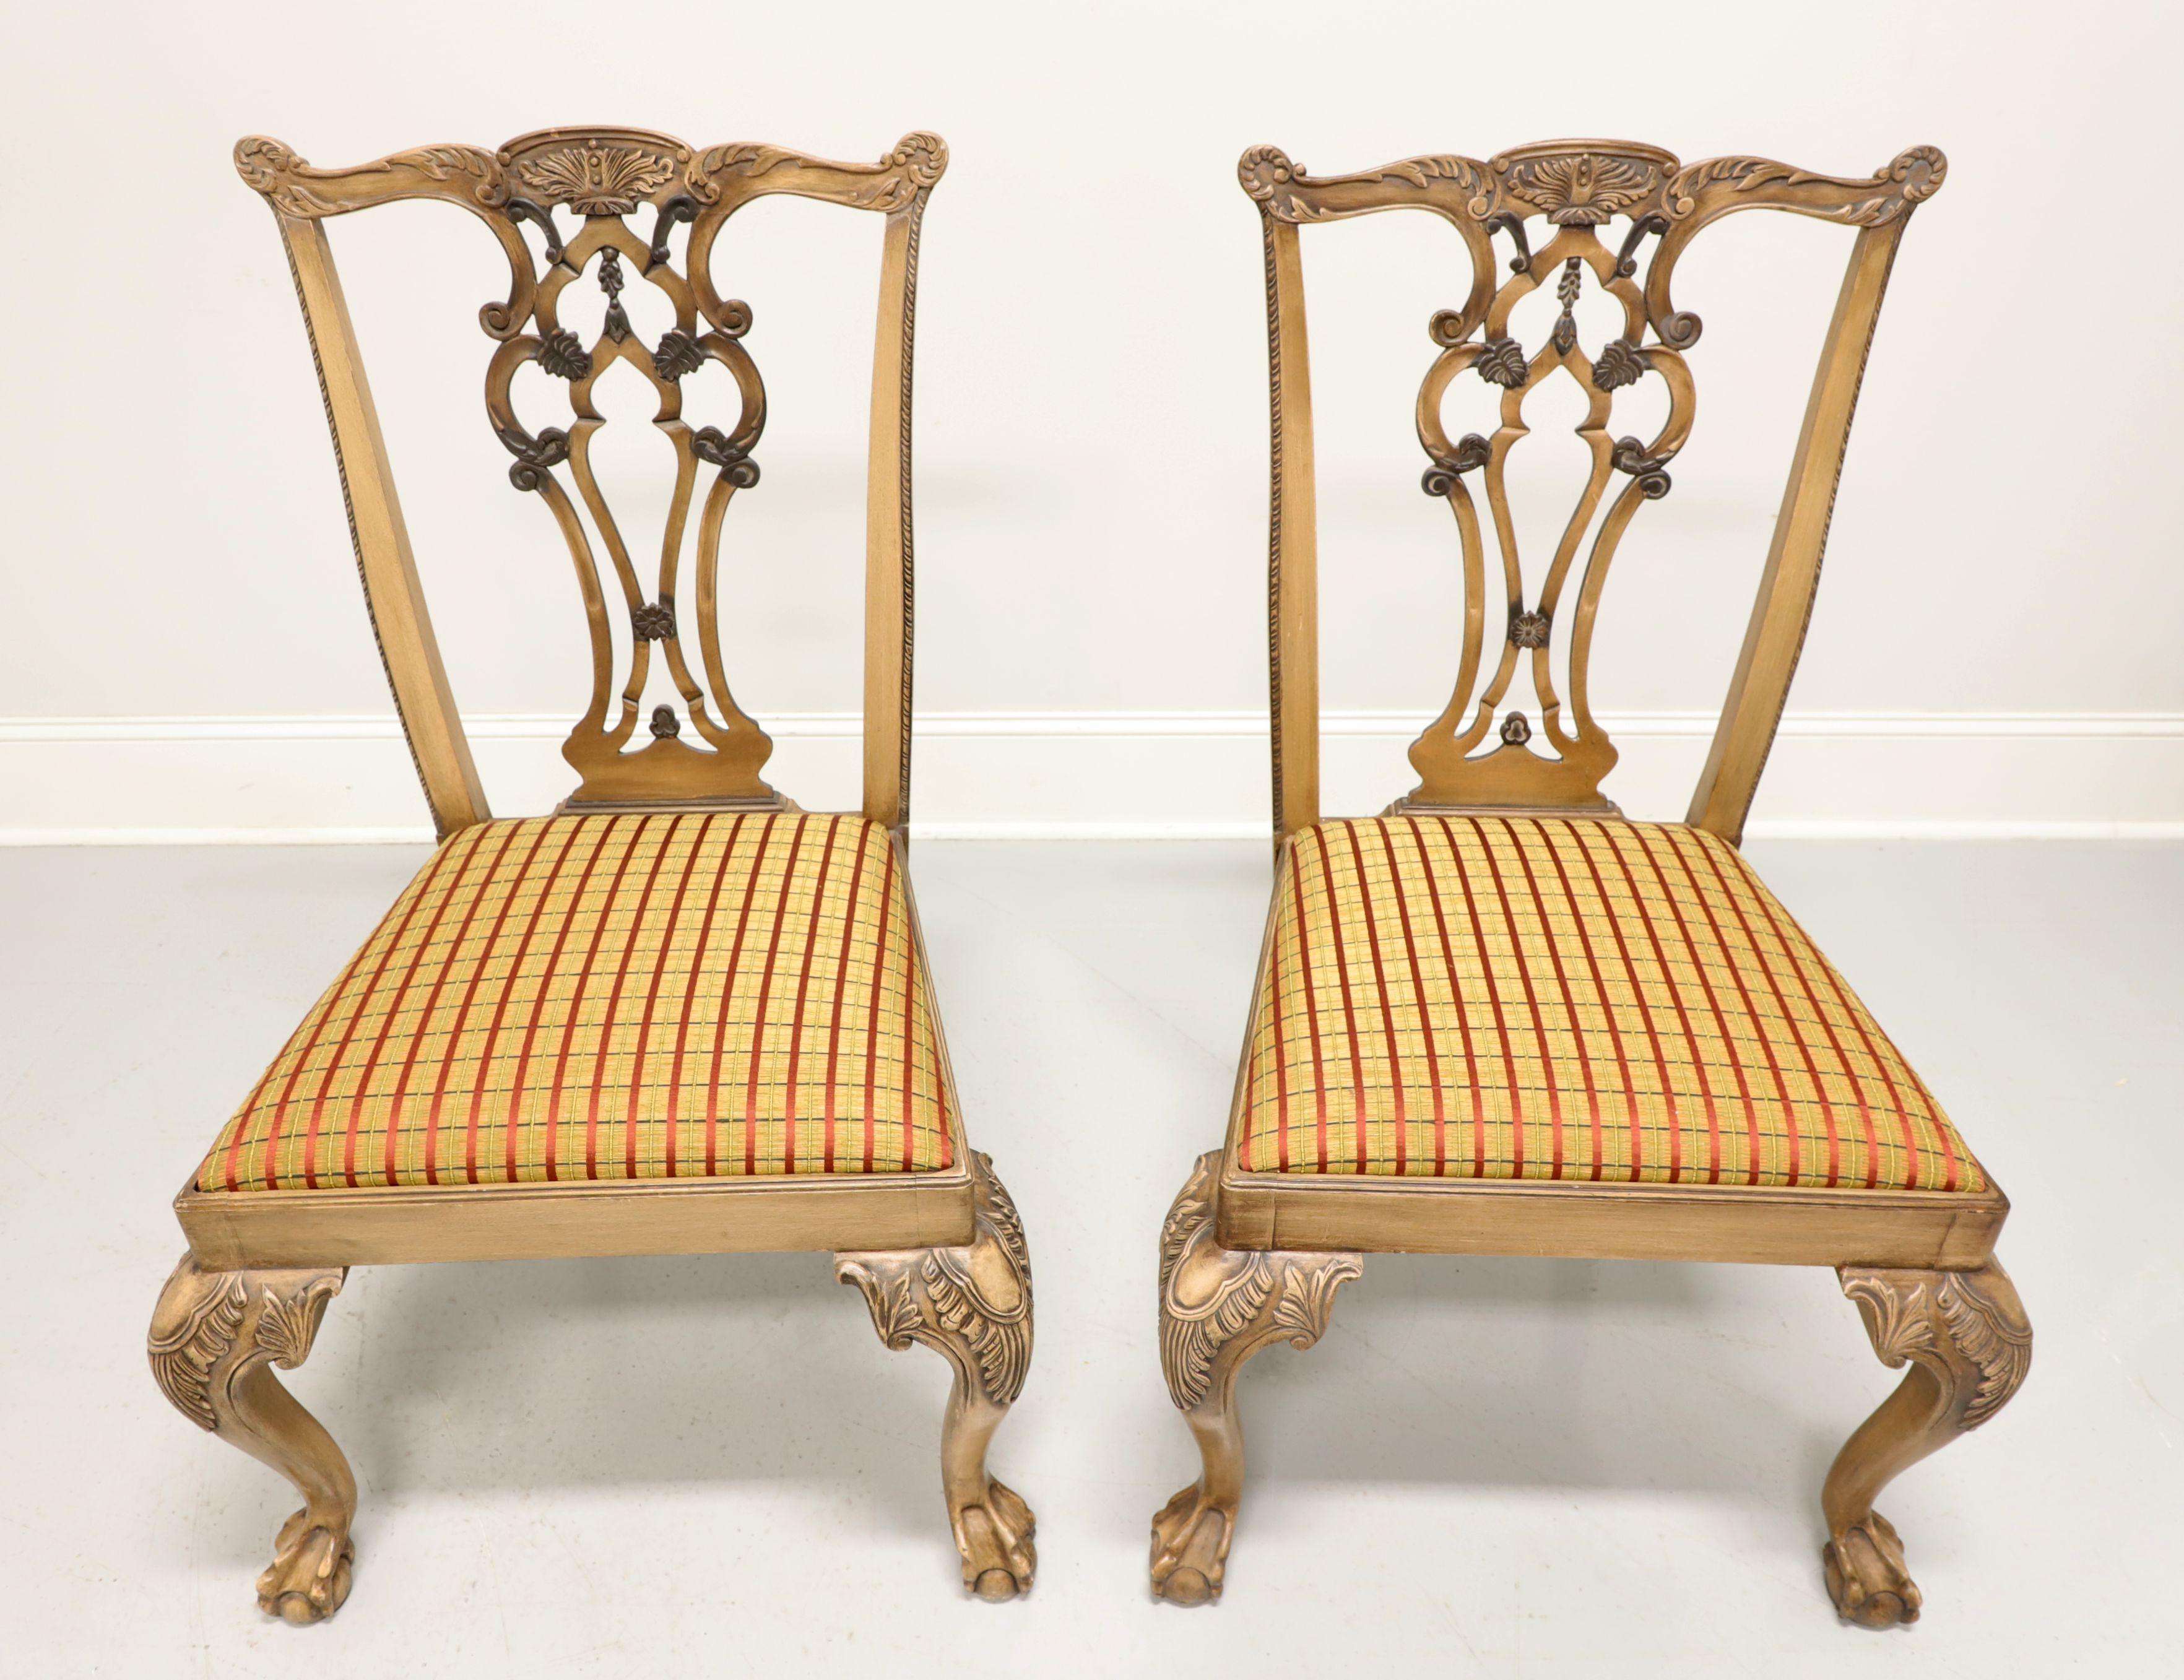 Paire de chaises d'appoint de style Chippendale, sans marque, de qualité similaire à Century ou Hickory Chair. Bois dur massif avec une finition teintée légèrement vieillie, barre de crête sculptée, dosseret, genoux et pieds cabriole avec des pieds